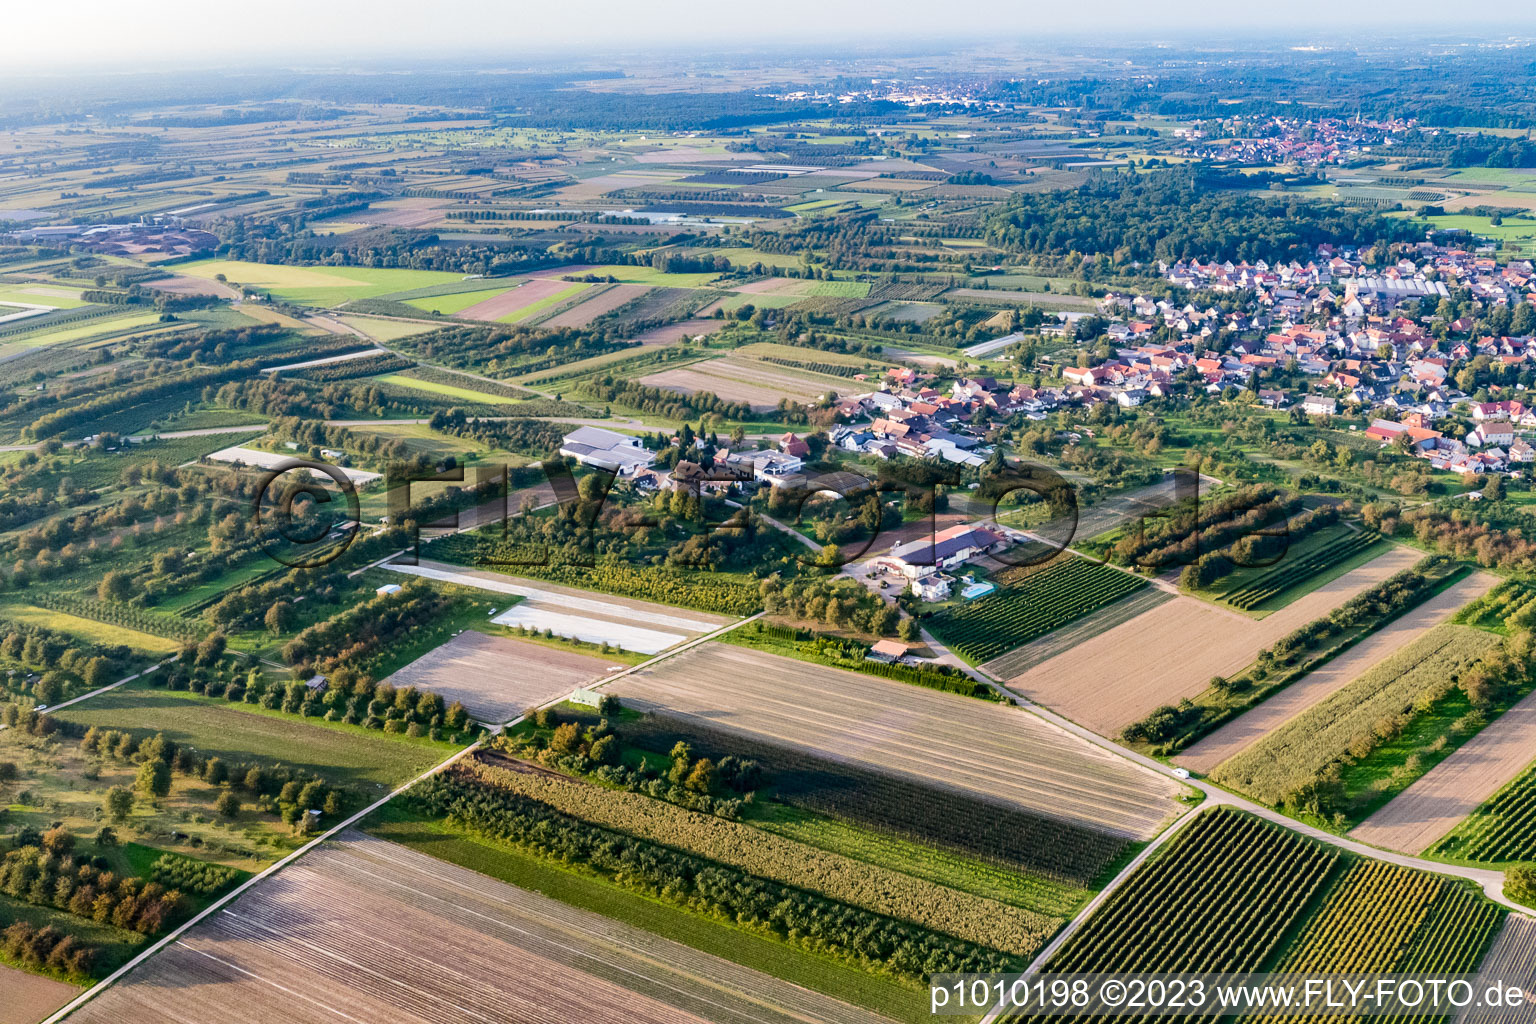 Luftbild von Ortsteil Zusenhofen in Oberkirch im Bundesland Baden-Württemberg, Deutschland